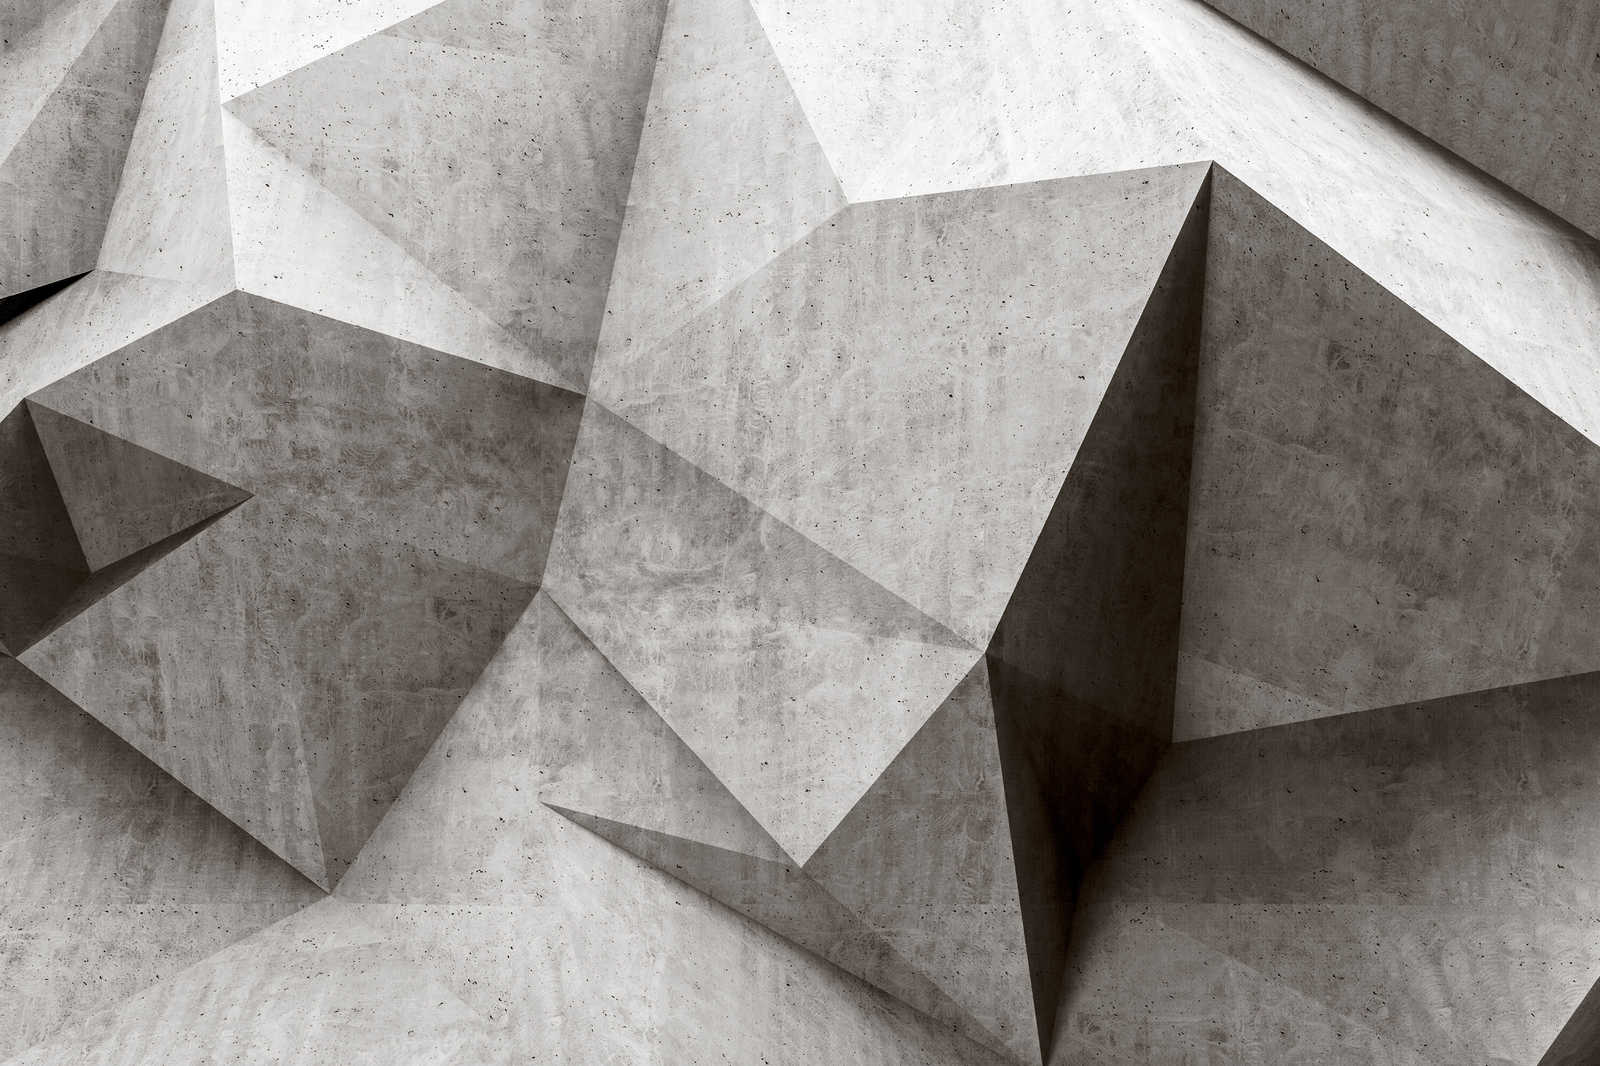             Boulder 1 - Cool 3D Concrete Polygons Canvas Painting - 1.20 m x 0.80 m
        